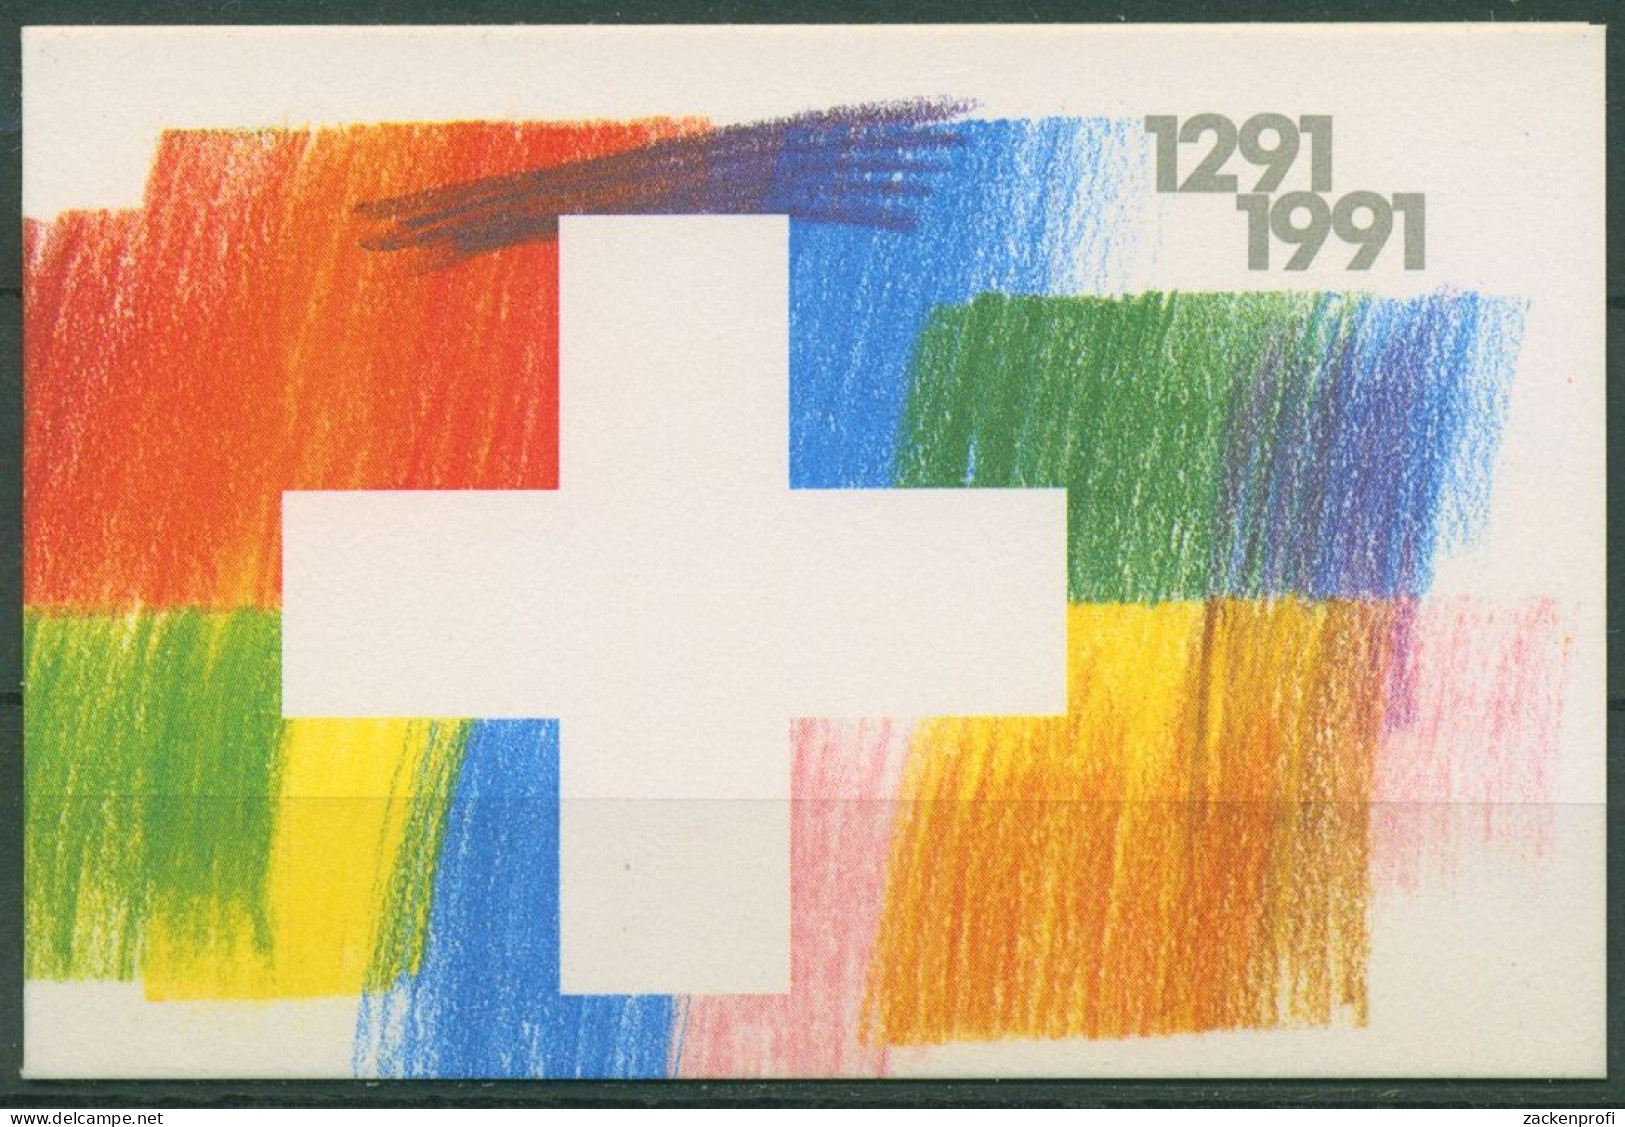 Schweiz 1991 Eidgenossenschaft Markenheftchen 89 Postfrisch (C62174) - Booklets